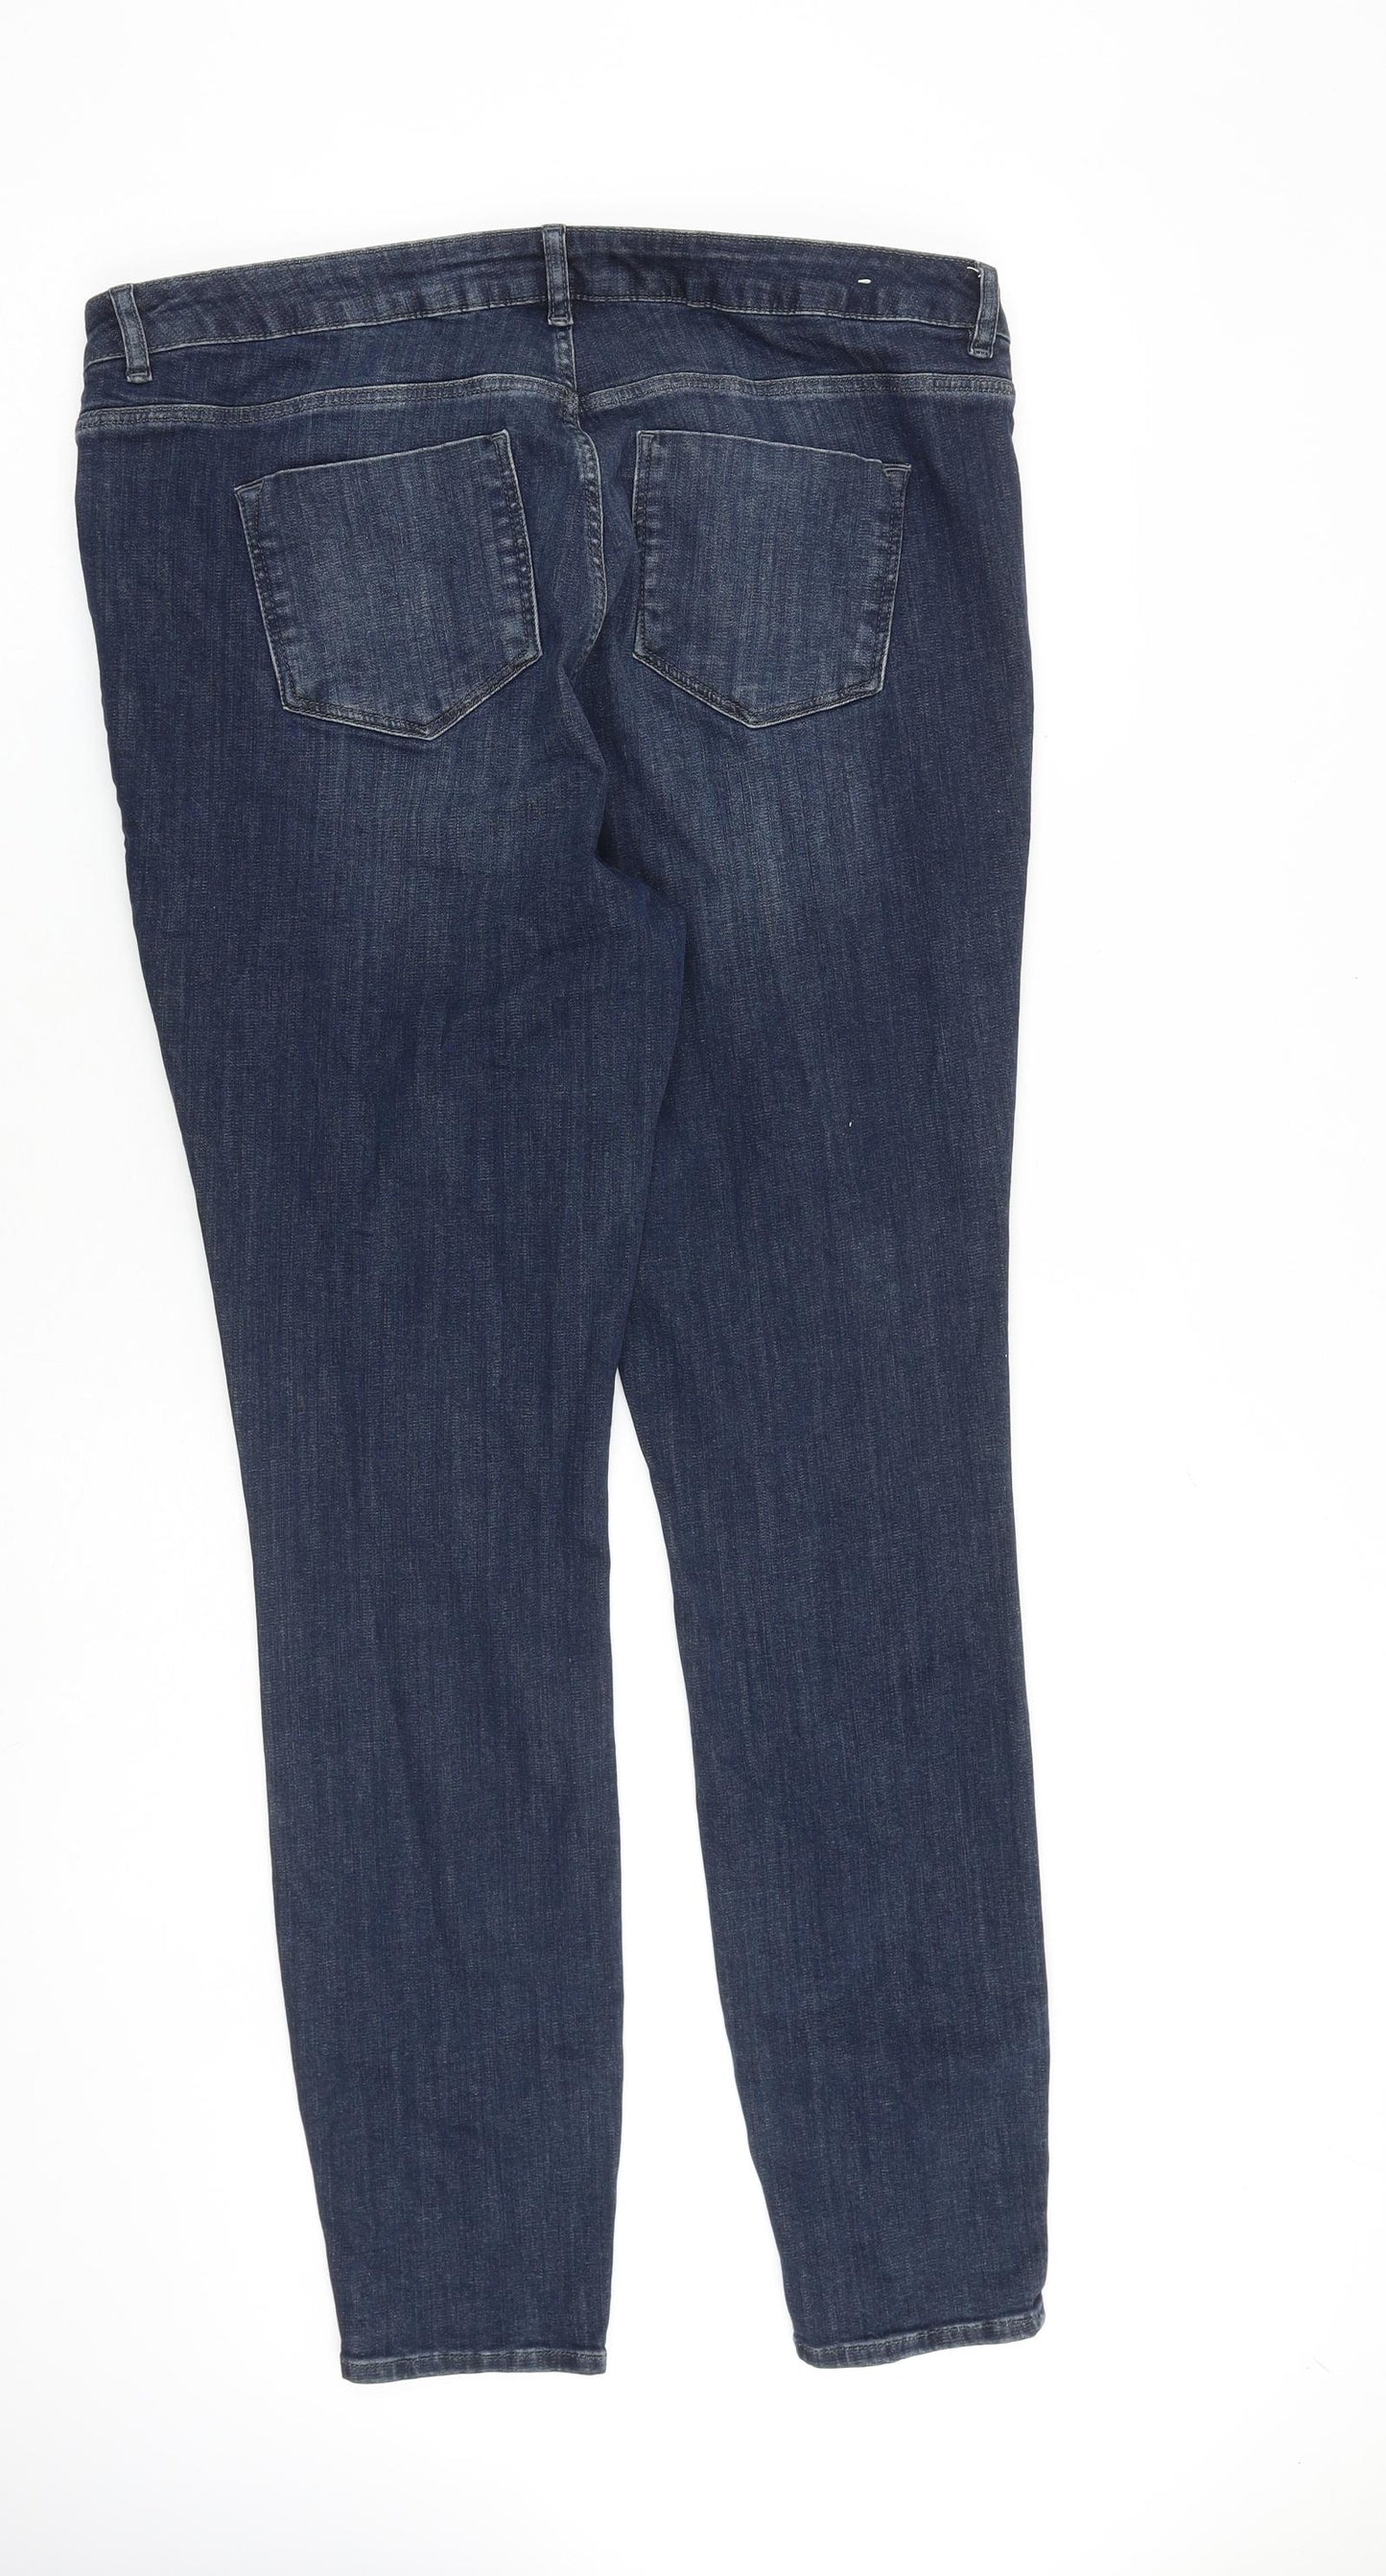 White Label Mens Blue Cotton Skinny Jeans Size 30 in L30 in Slim Zip